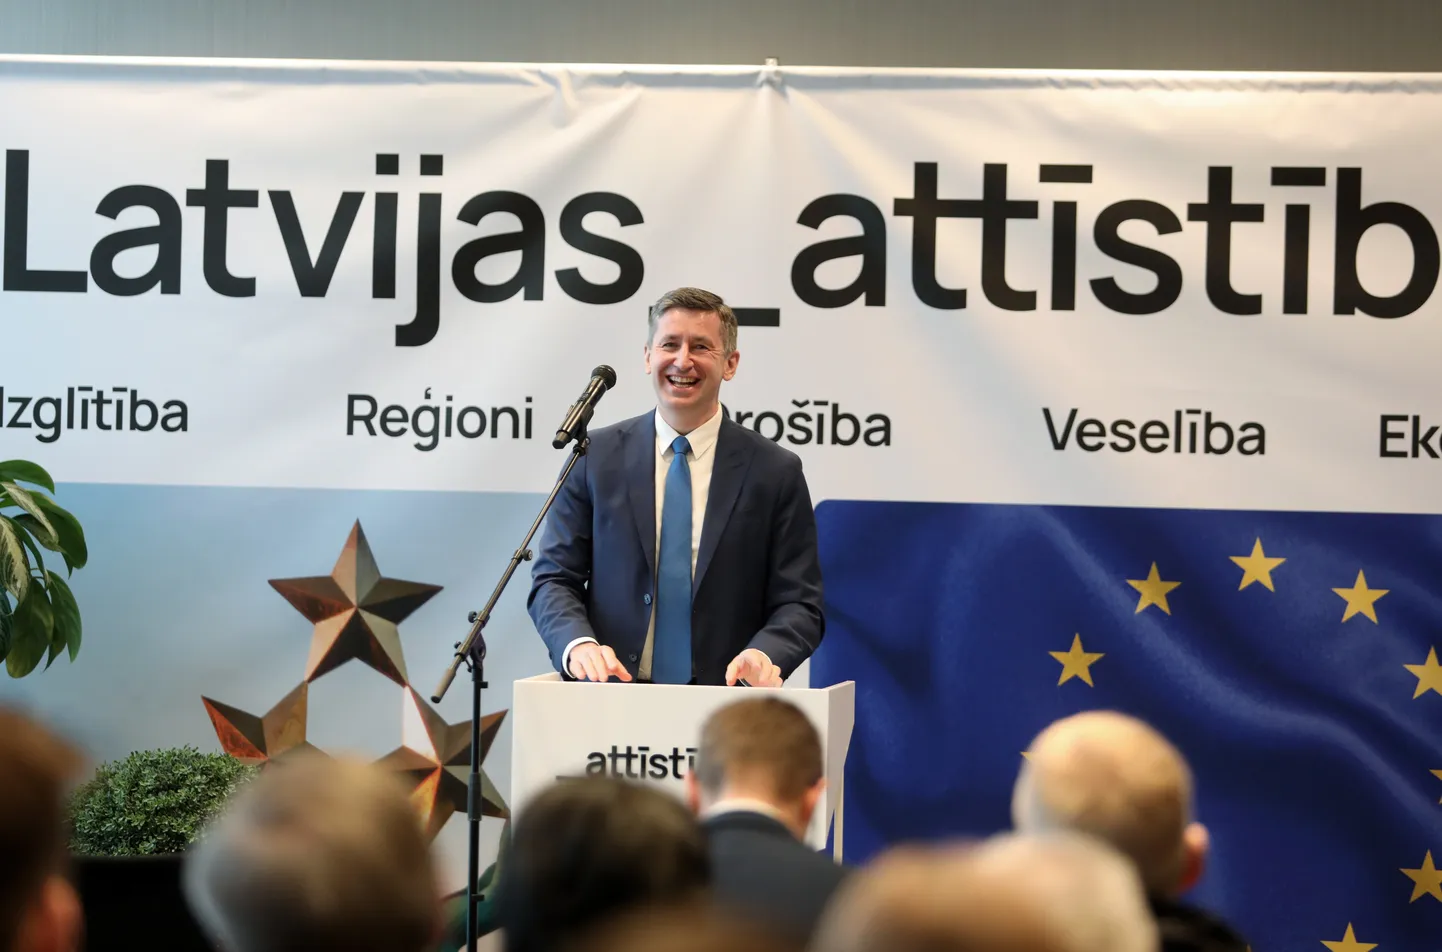 Partijas "Latvijas attīstībai" valdes loceklis Vjačeslavs Dombrovskis piedalās partijas "Latvijas attīstībai" desmitgades kongresā, kurā notiek ikgadējā biedru sapulce, prezentē partijas jauno vizuālo identitāti, kā arī norisinās Ētikas komisijas un Revīzijas komisijas vēlēšanas.